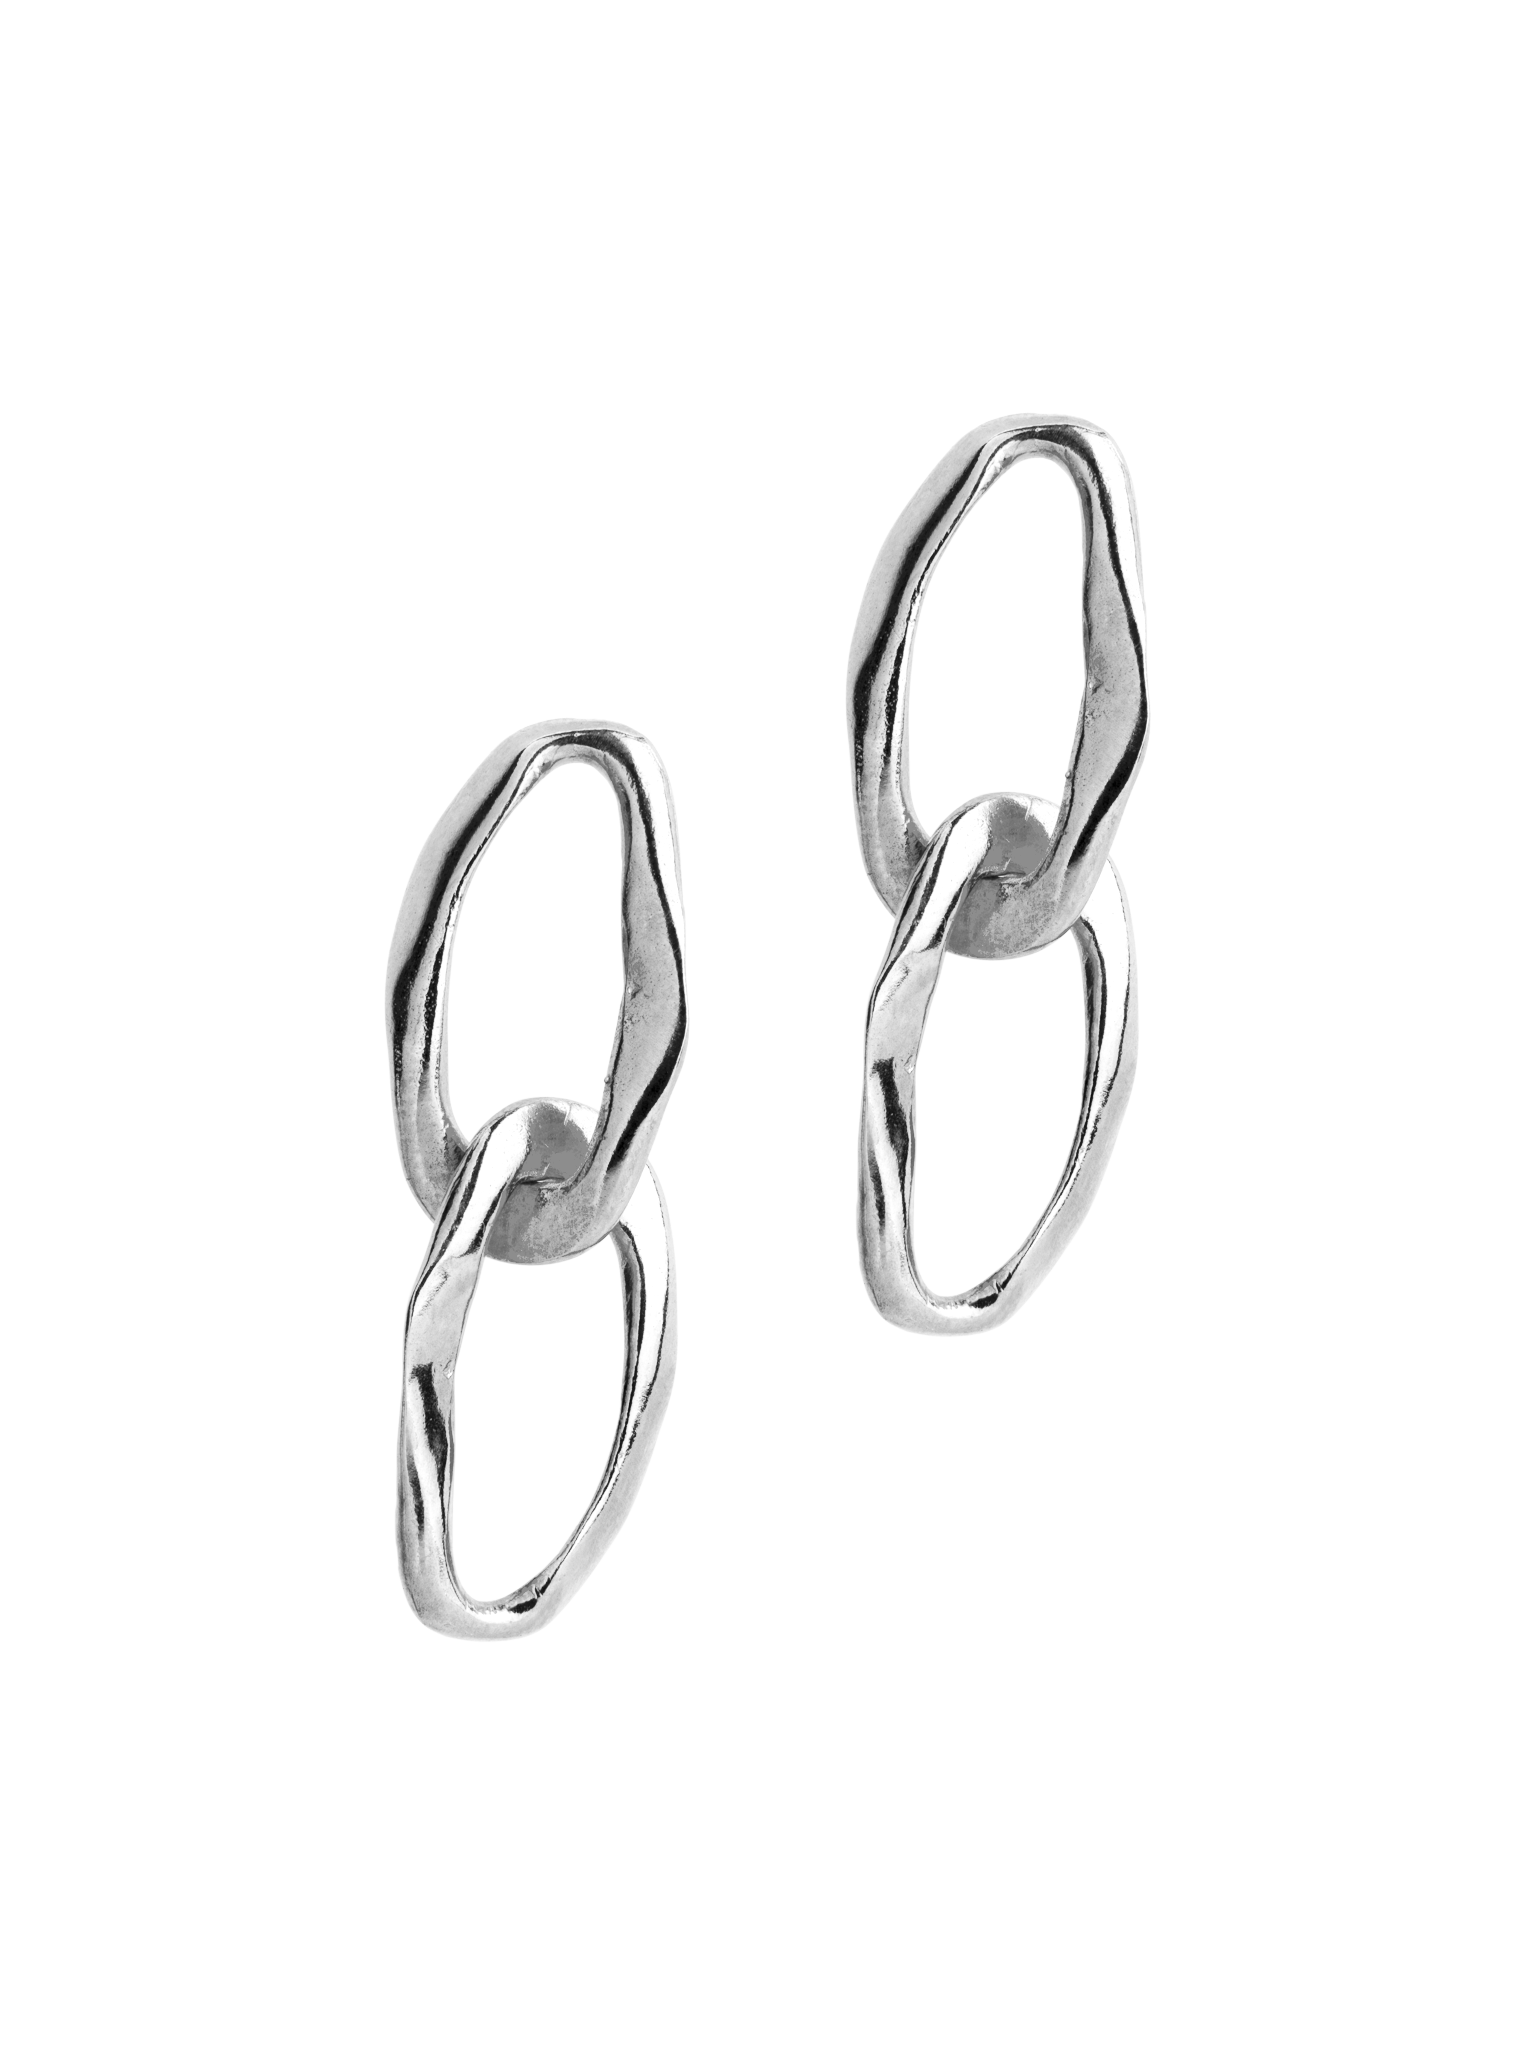 Wave earrings duo silver